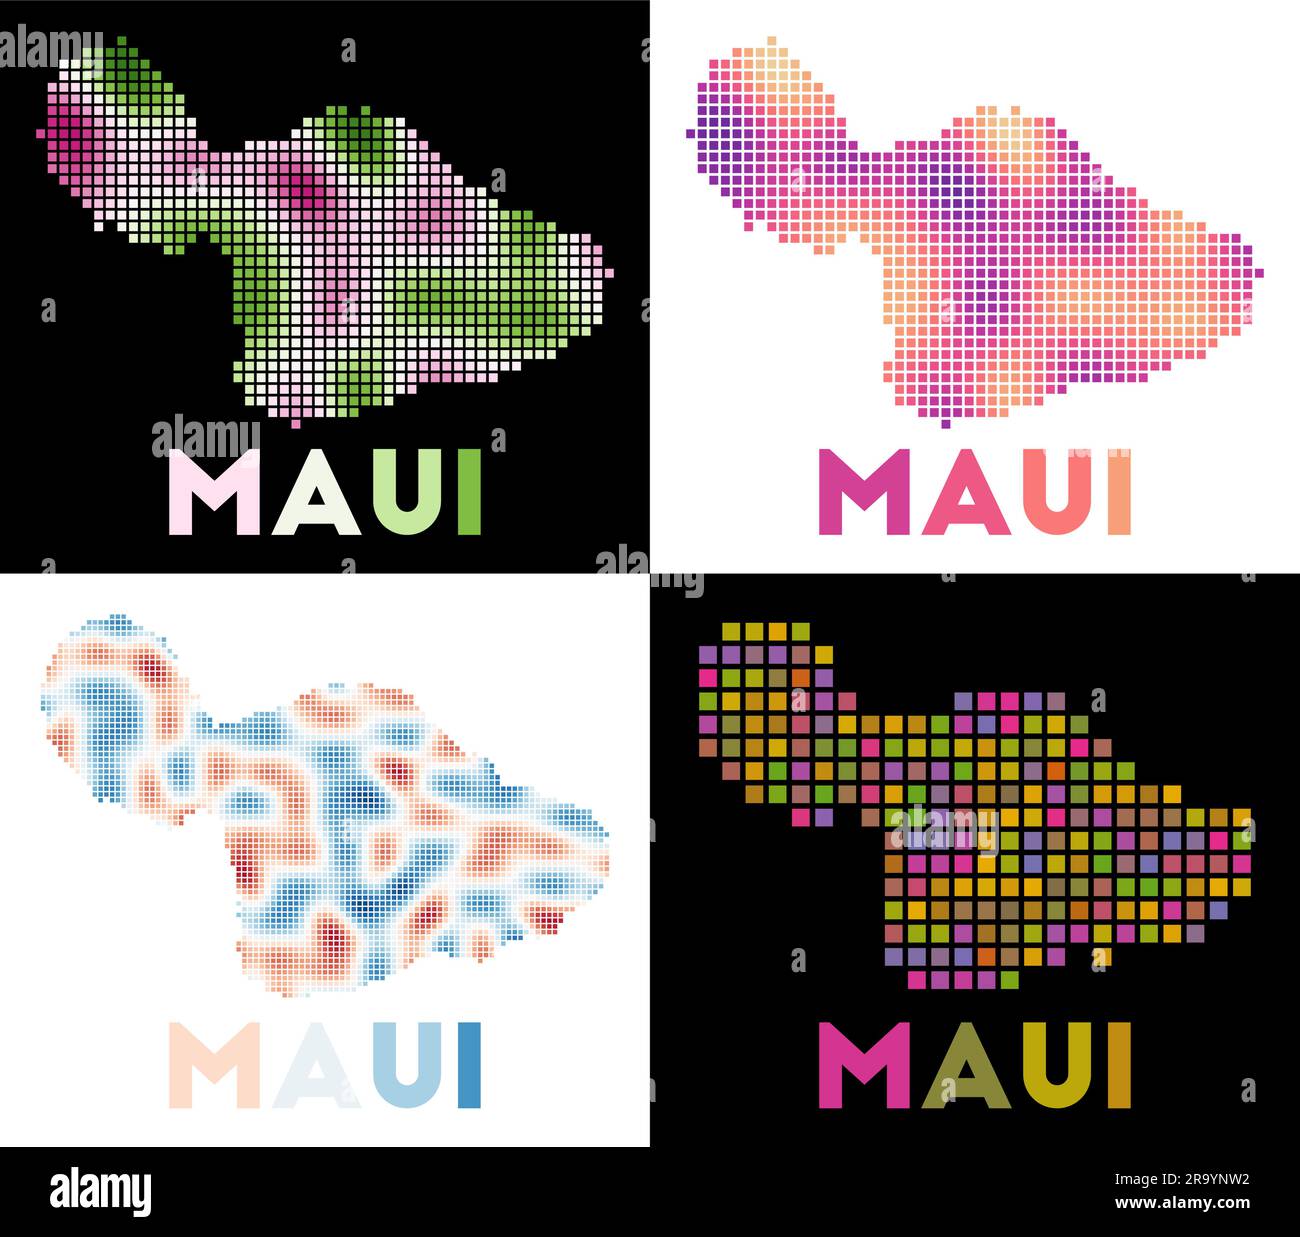 Maui-Karte. Kartensammlung von Maui im gepunkteten Stil. Die Inselgrenzen sind mit Rechtecken für Ihr Design gefüllt. Vektordarstellung. Stock Vektor